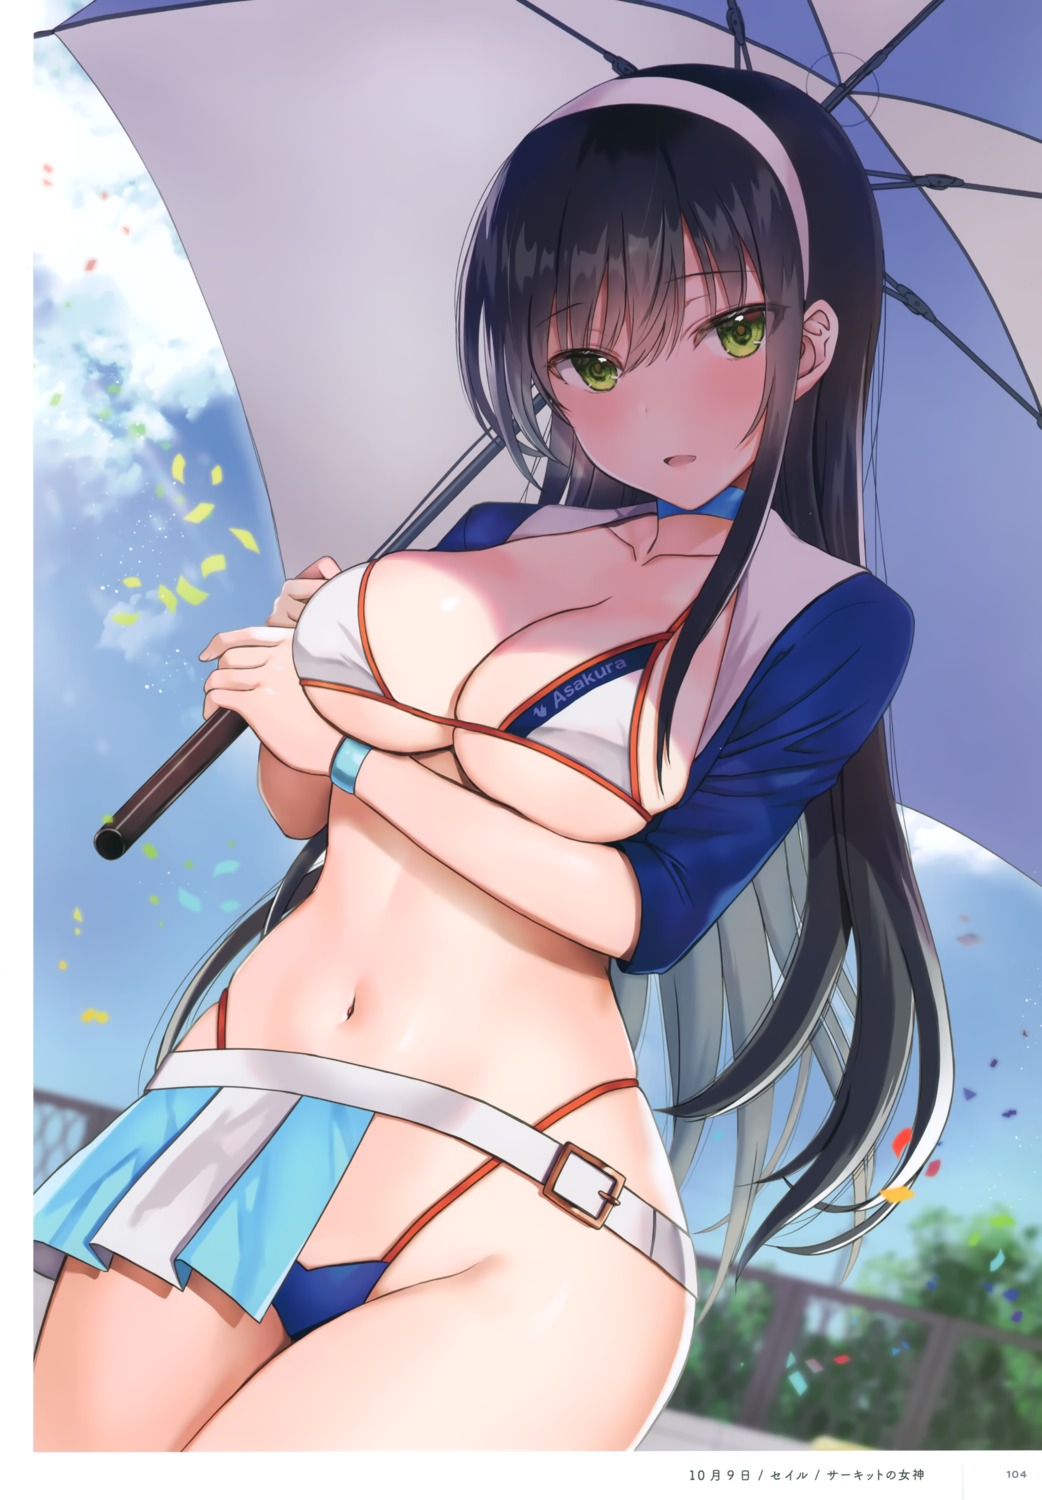 bra cleavage pantsu seiru umbrella